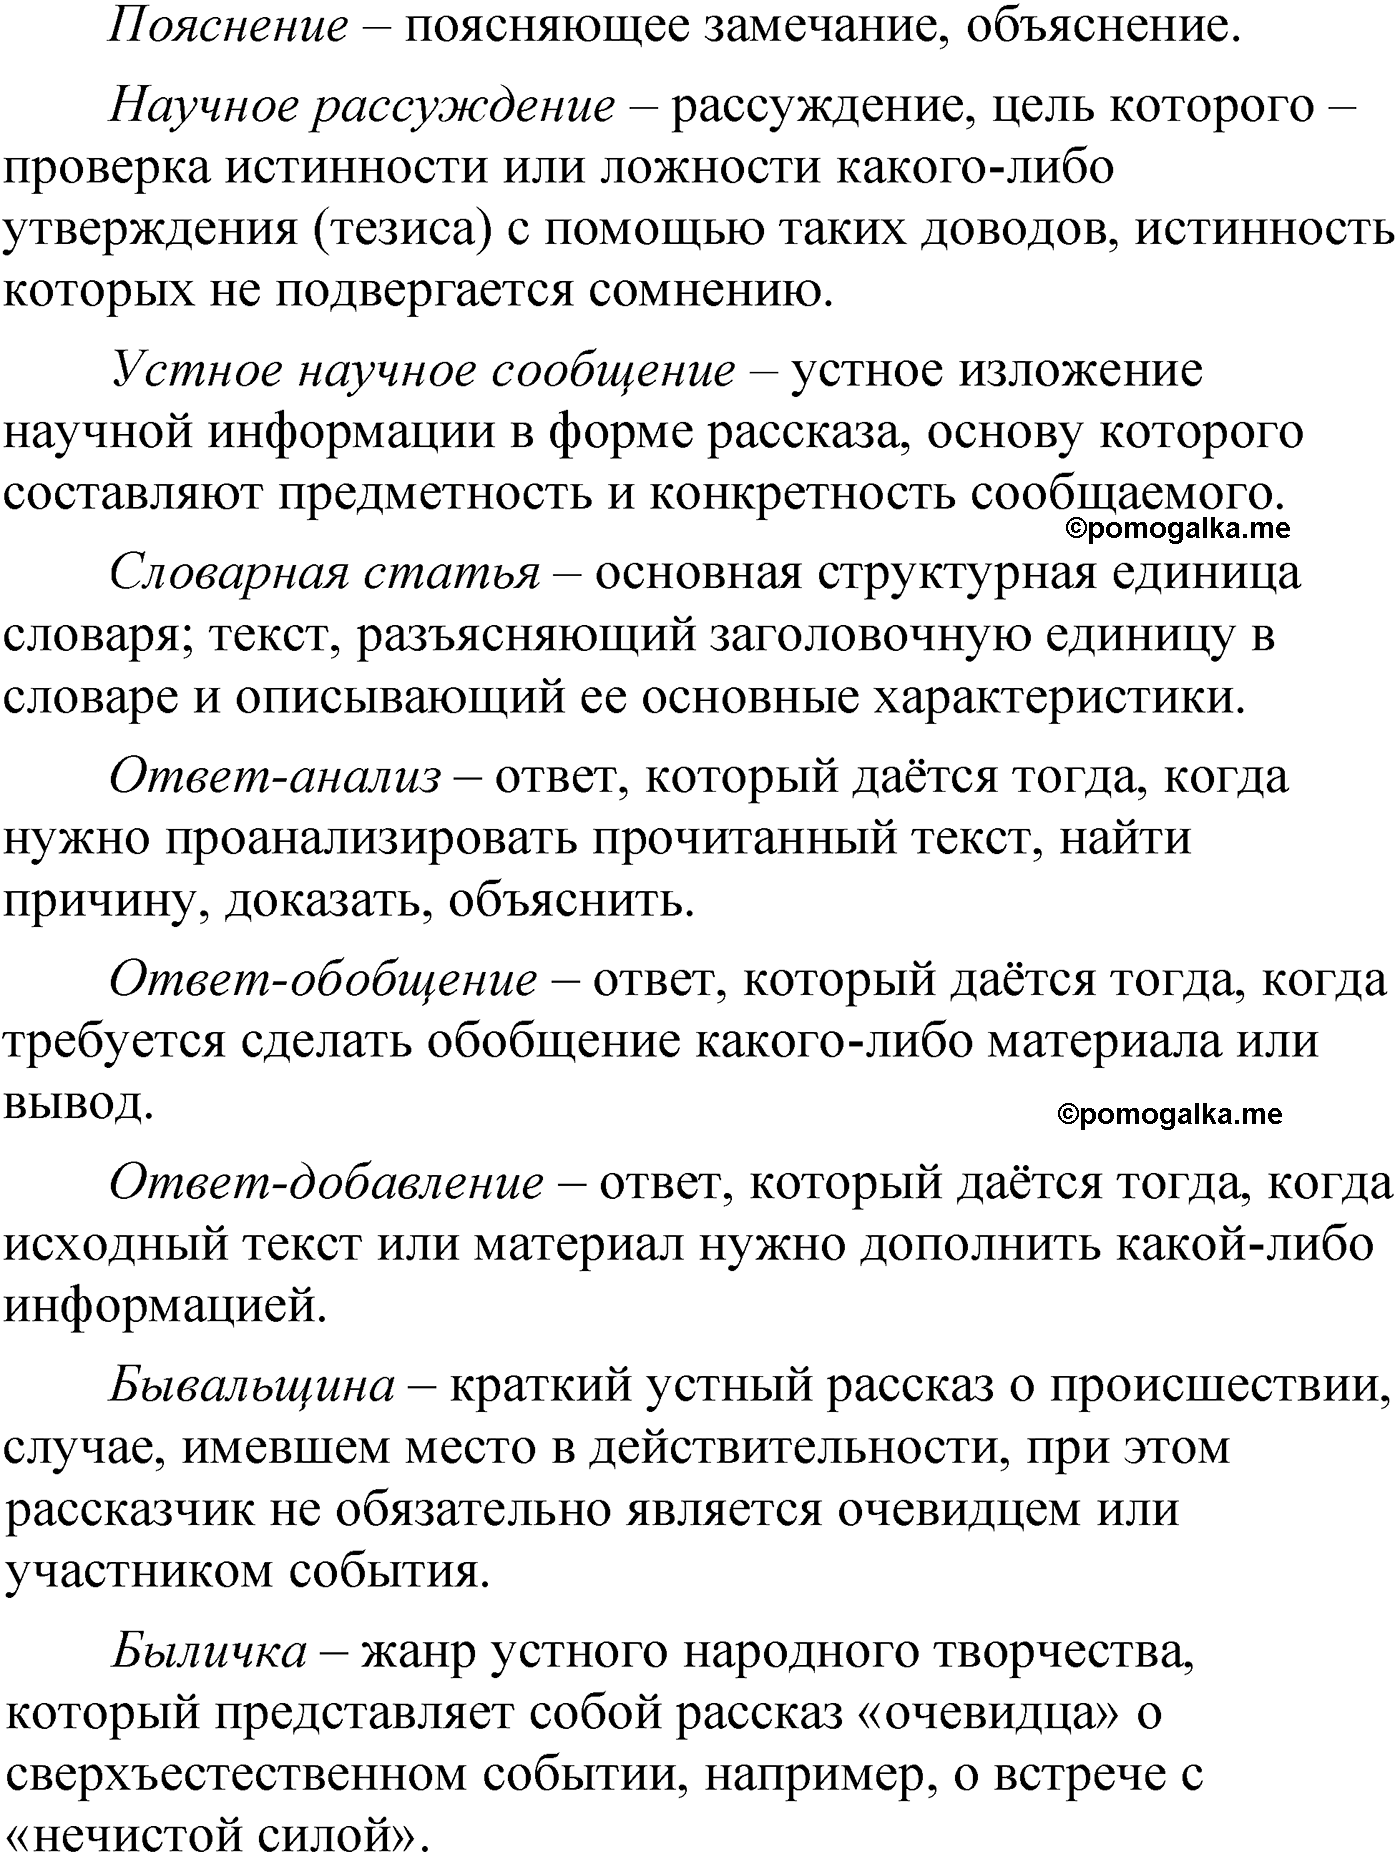 упражнение 199 русский язык 6 класс Александрова 2022